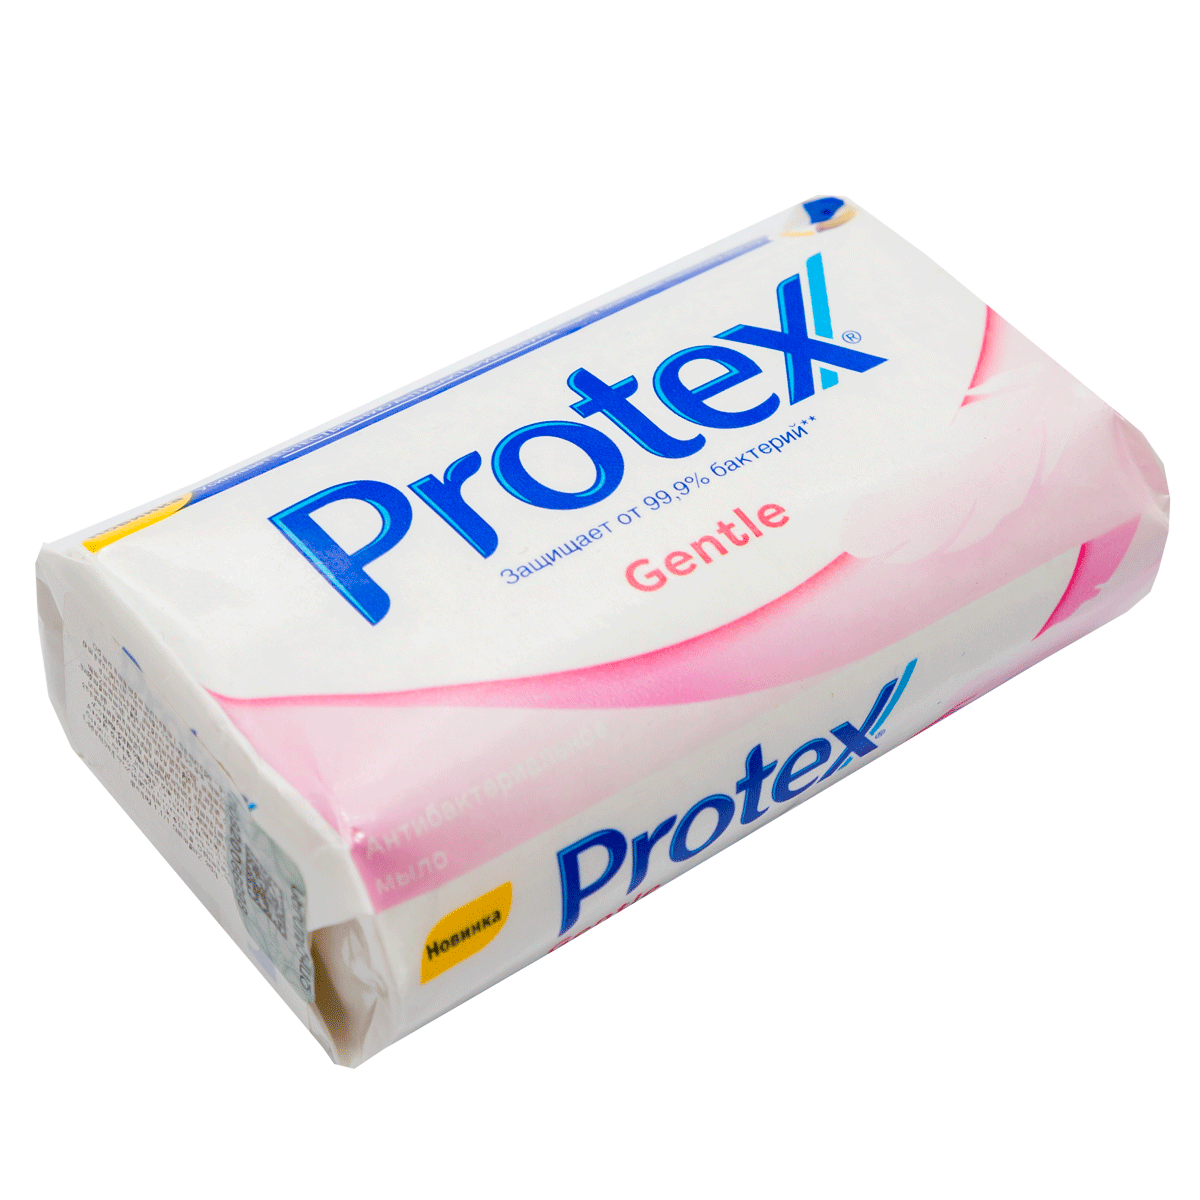 Antibacterial soap Protex Gentle